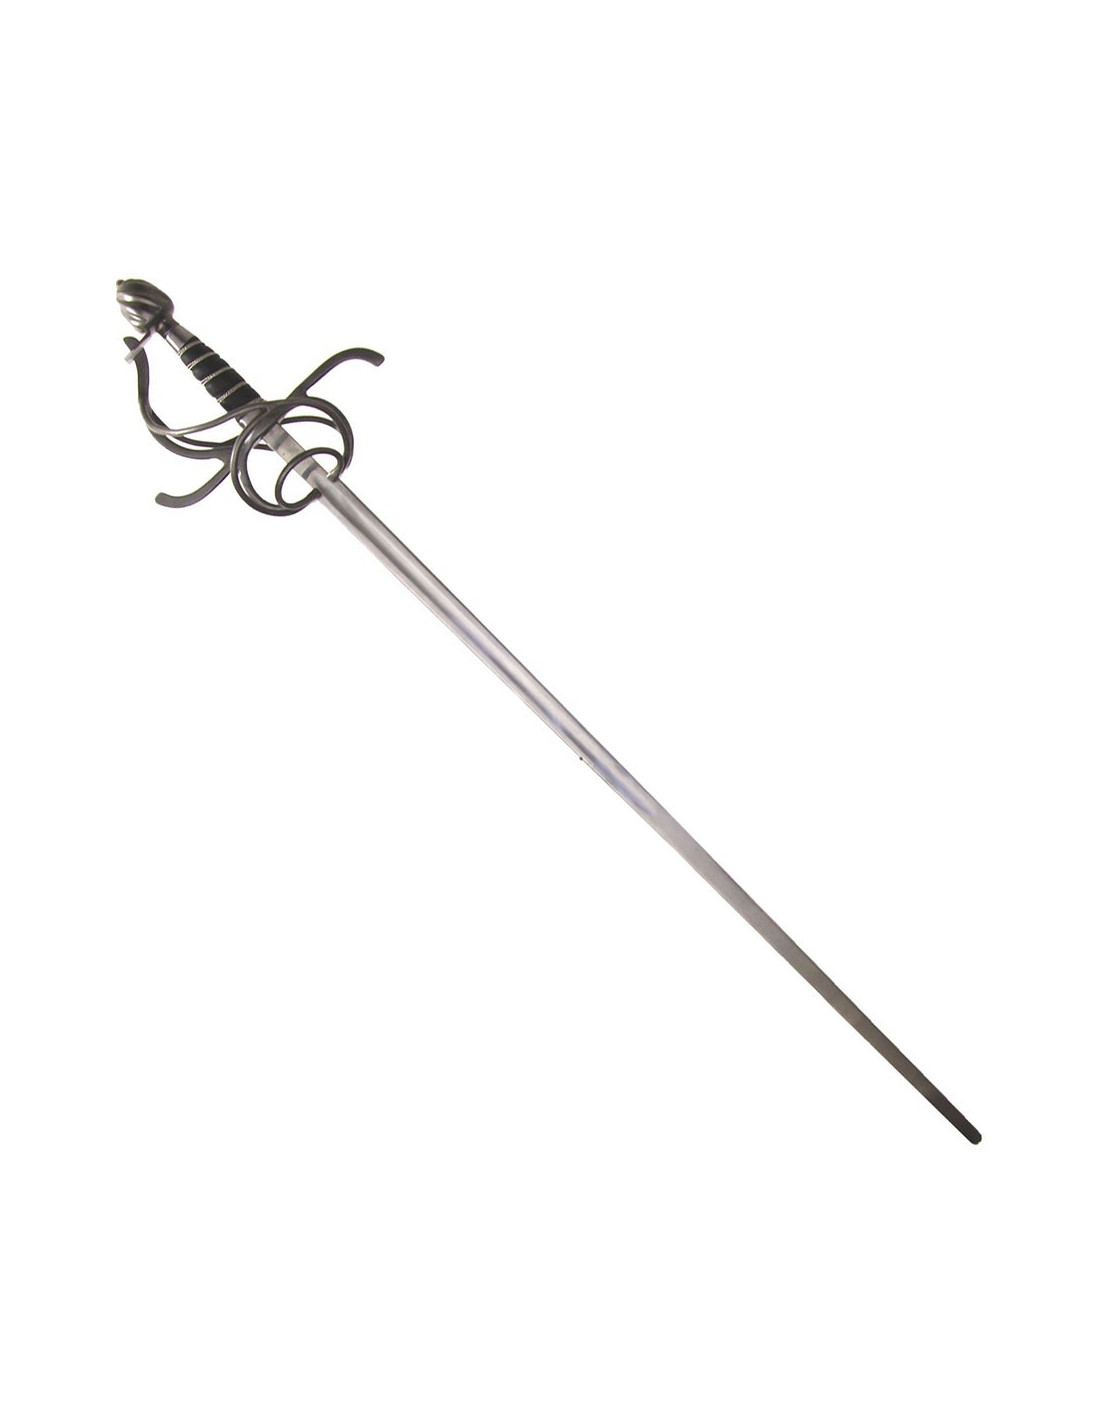 Espada vikinga Black Fencer - Espada corta para HEMA